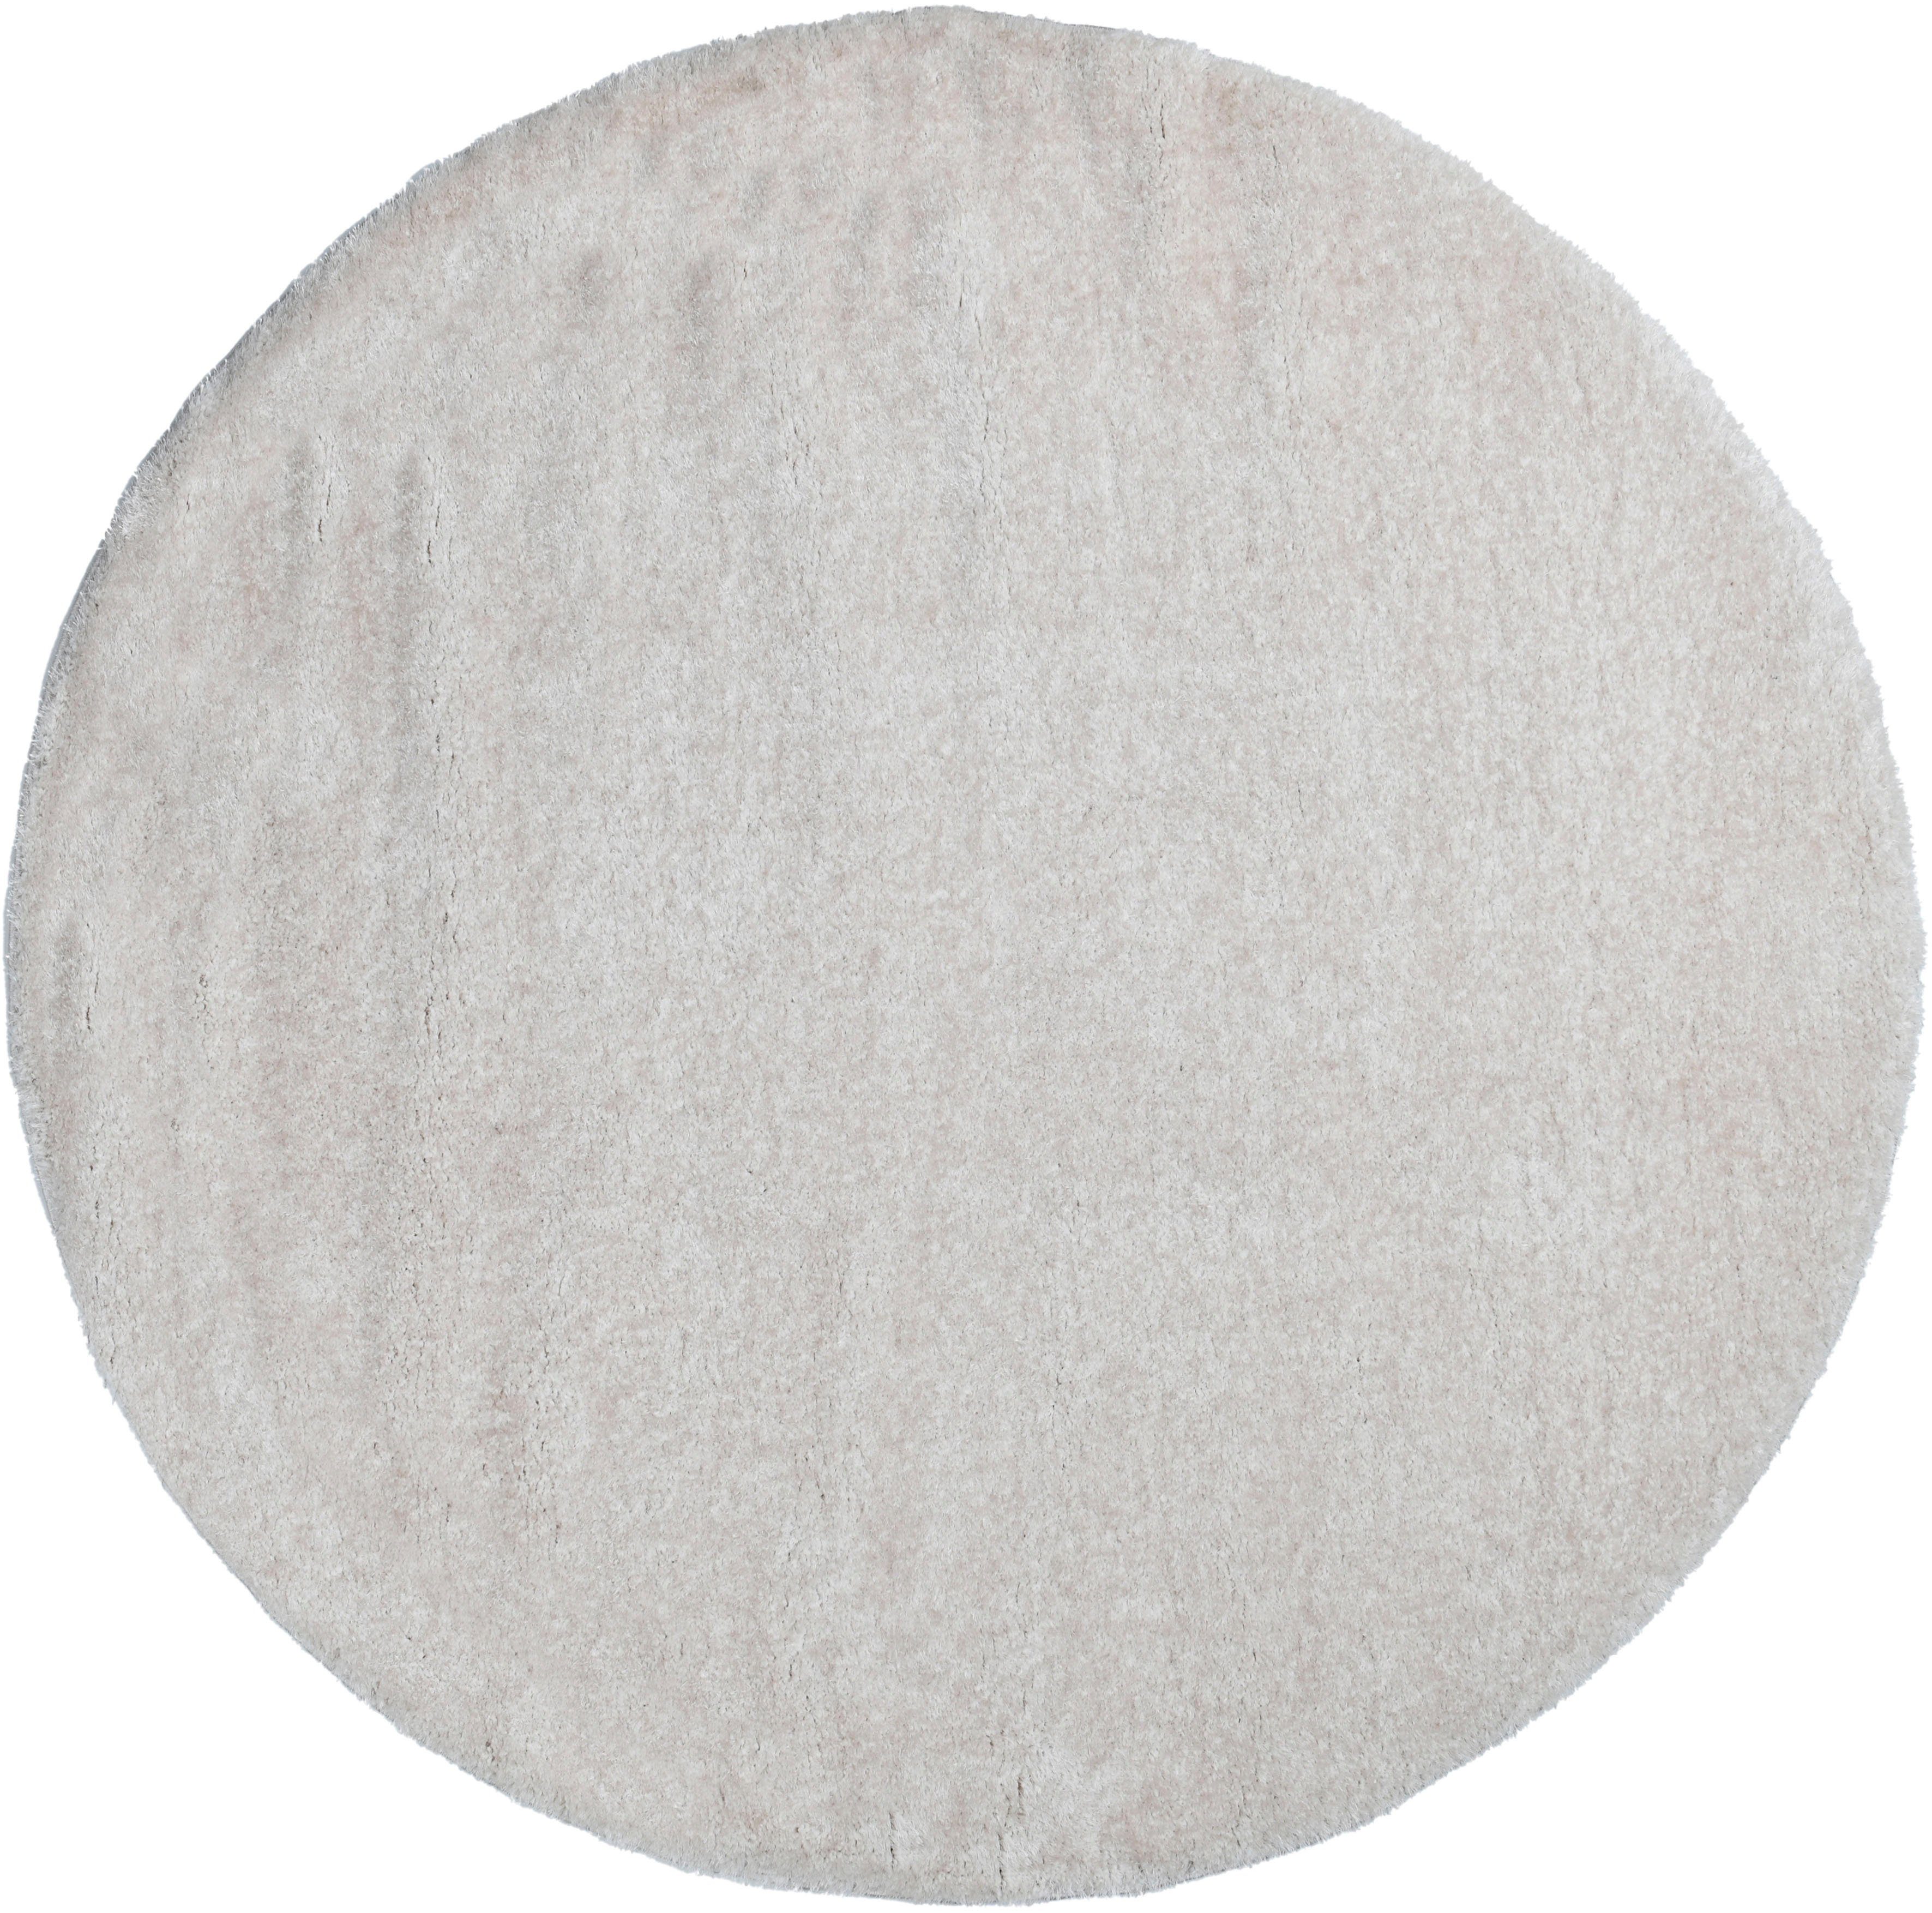 Hochflor-Teppich Malin, Home affaire, rund, Höhe: 43 mm, Uni-Farben, leicht glänzend, besonders flauschig durch Mikrofaser creme